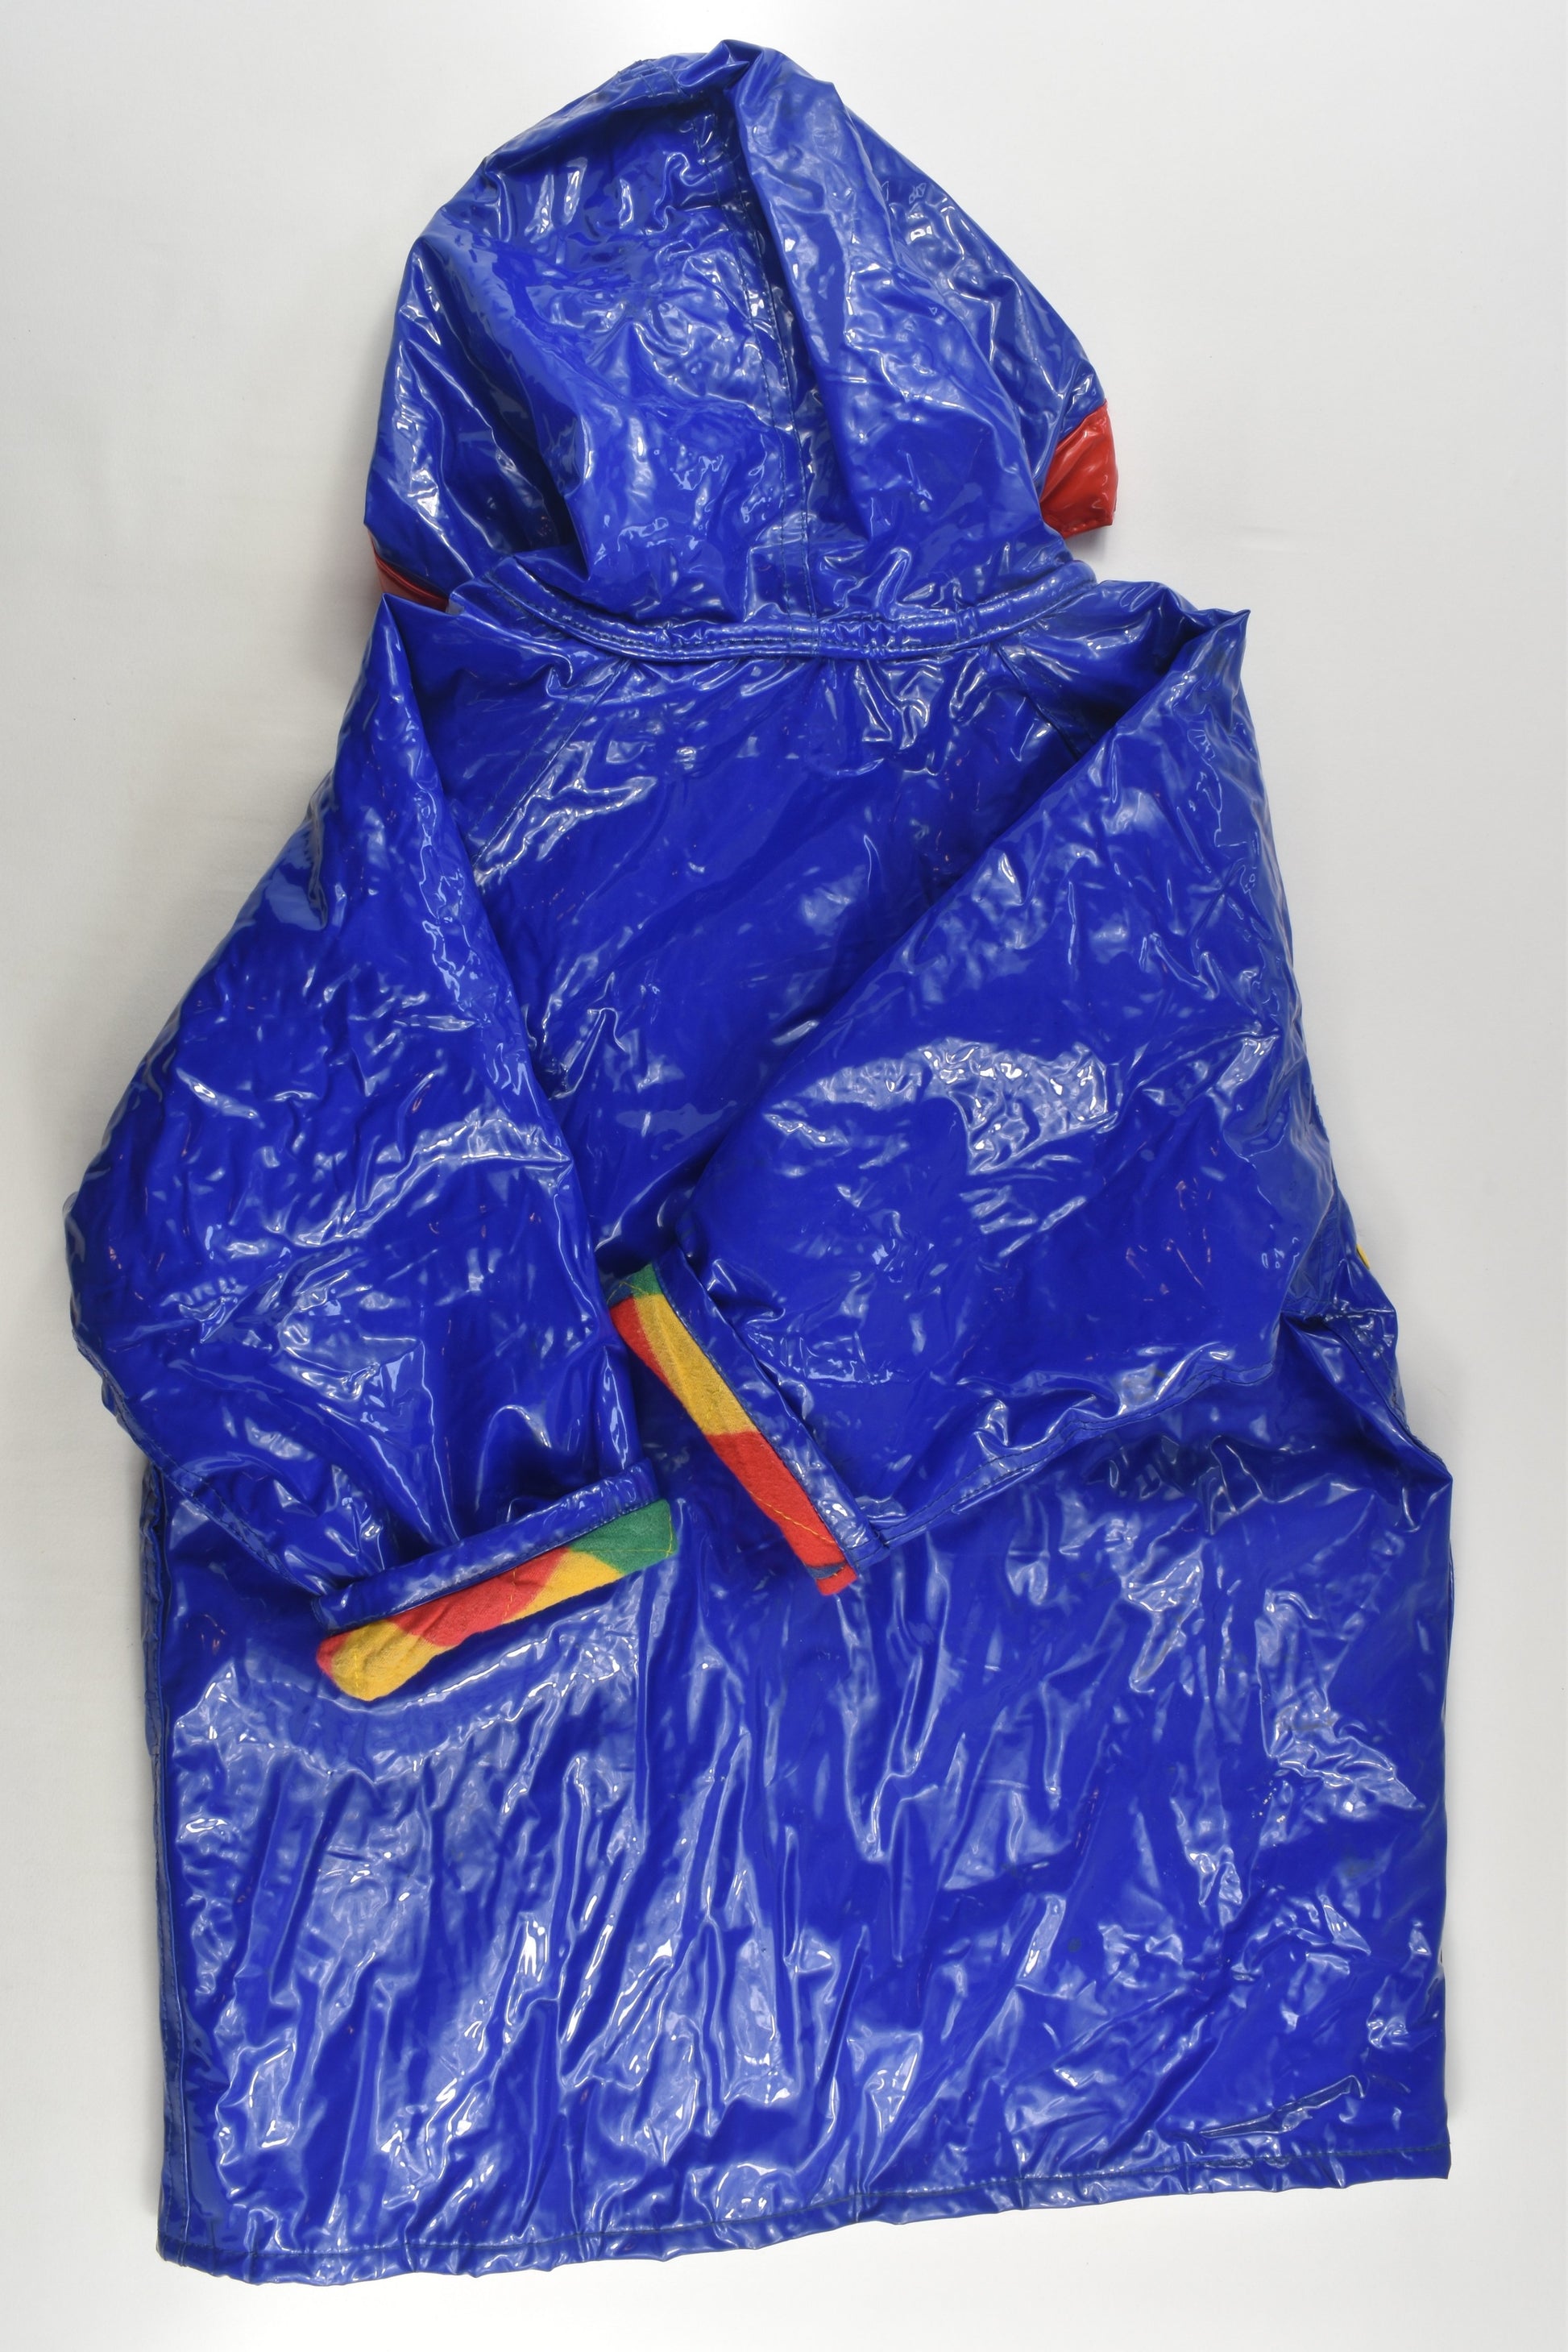 Wippette Kids Size 4 Vintage Rain Jacket